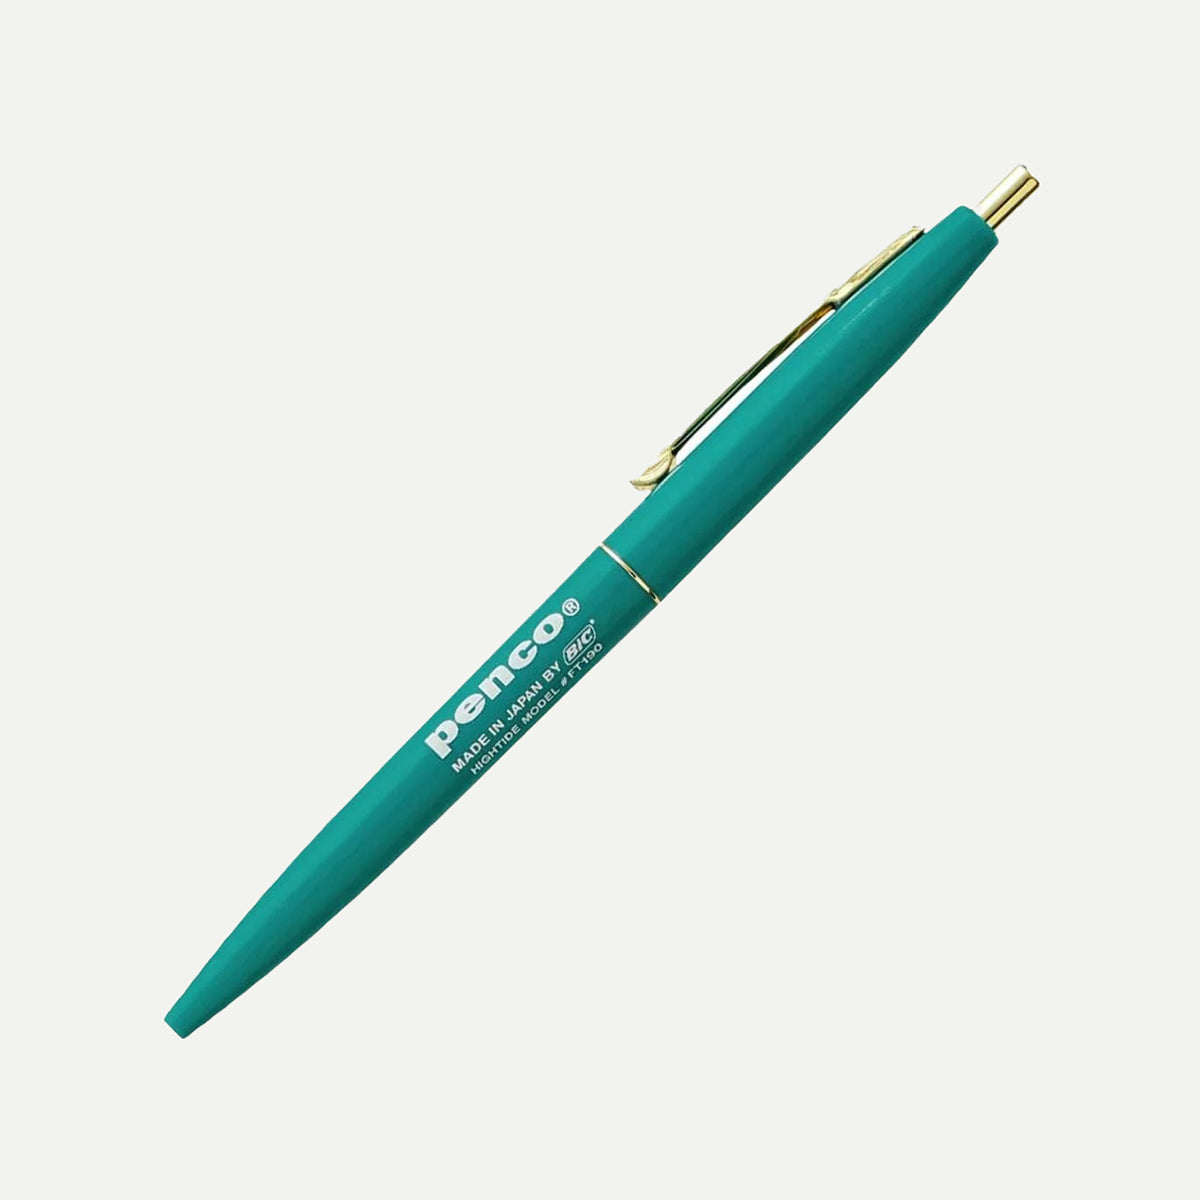 Hightide Penco Turquoise Knock Ballpoint Pen